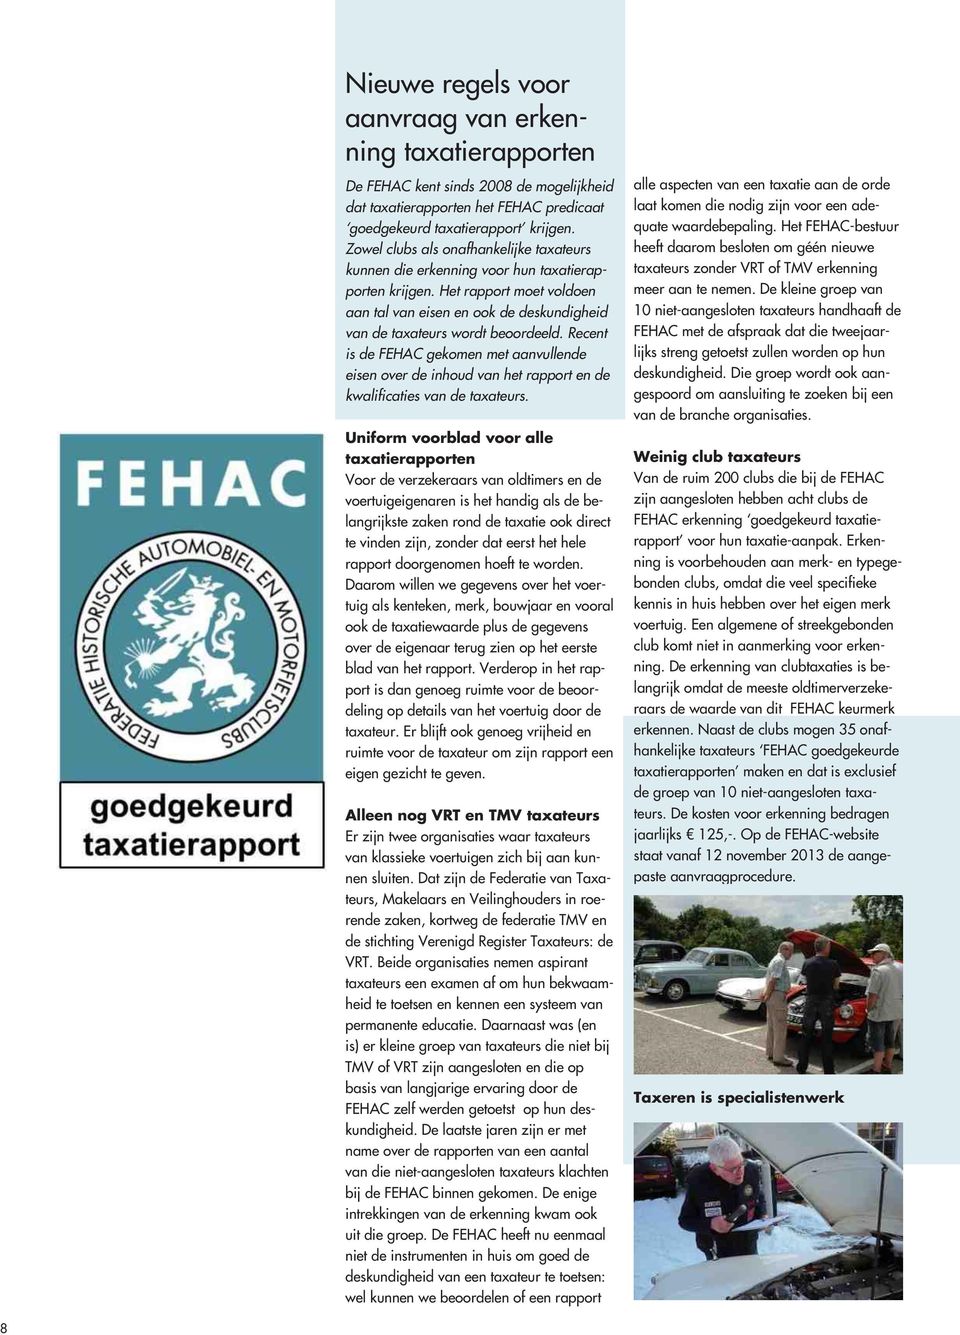 Recent is de FEHAC gekomen met aanvullende eisen over de inhoud van het rapport en de kwalificaties van de taxateurs.